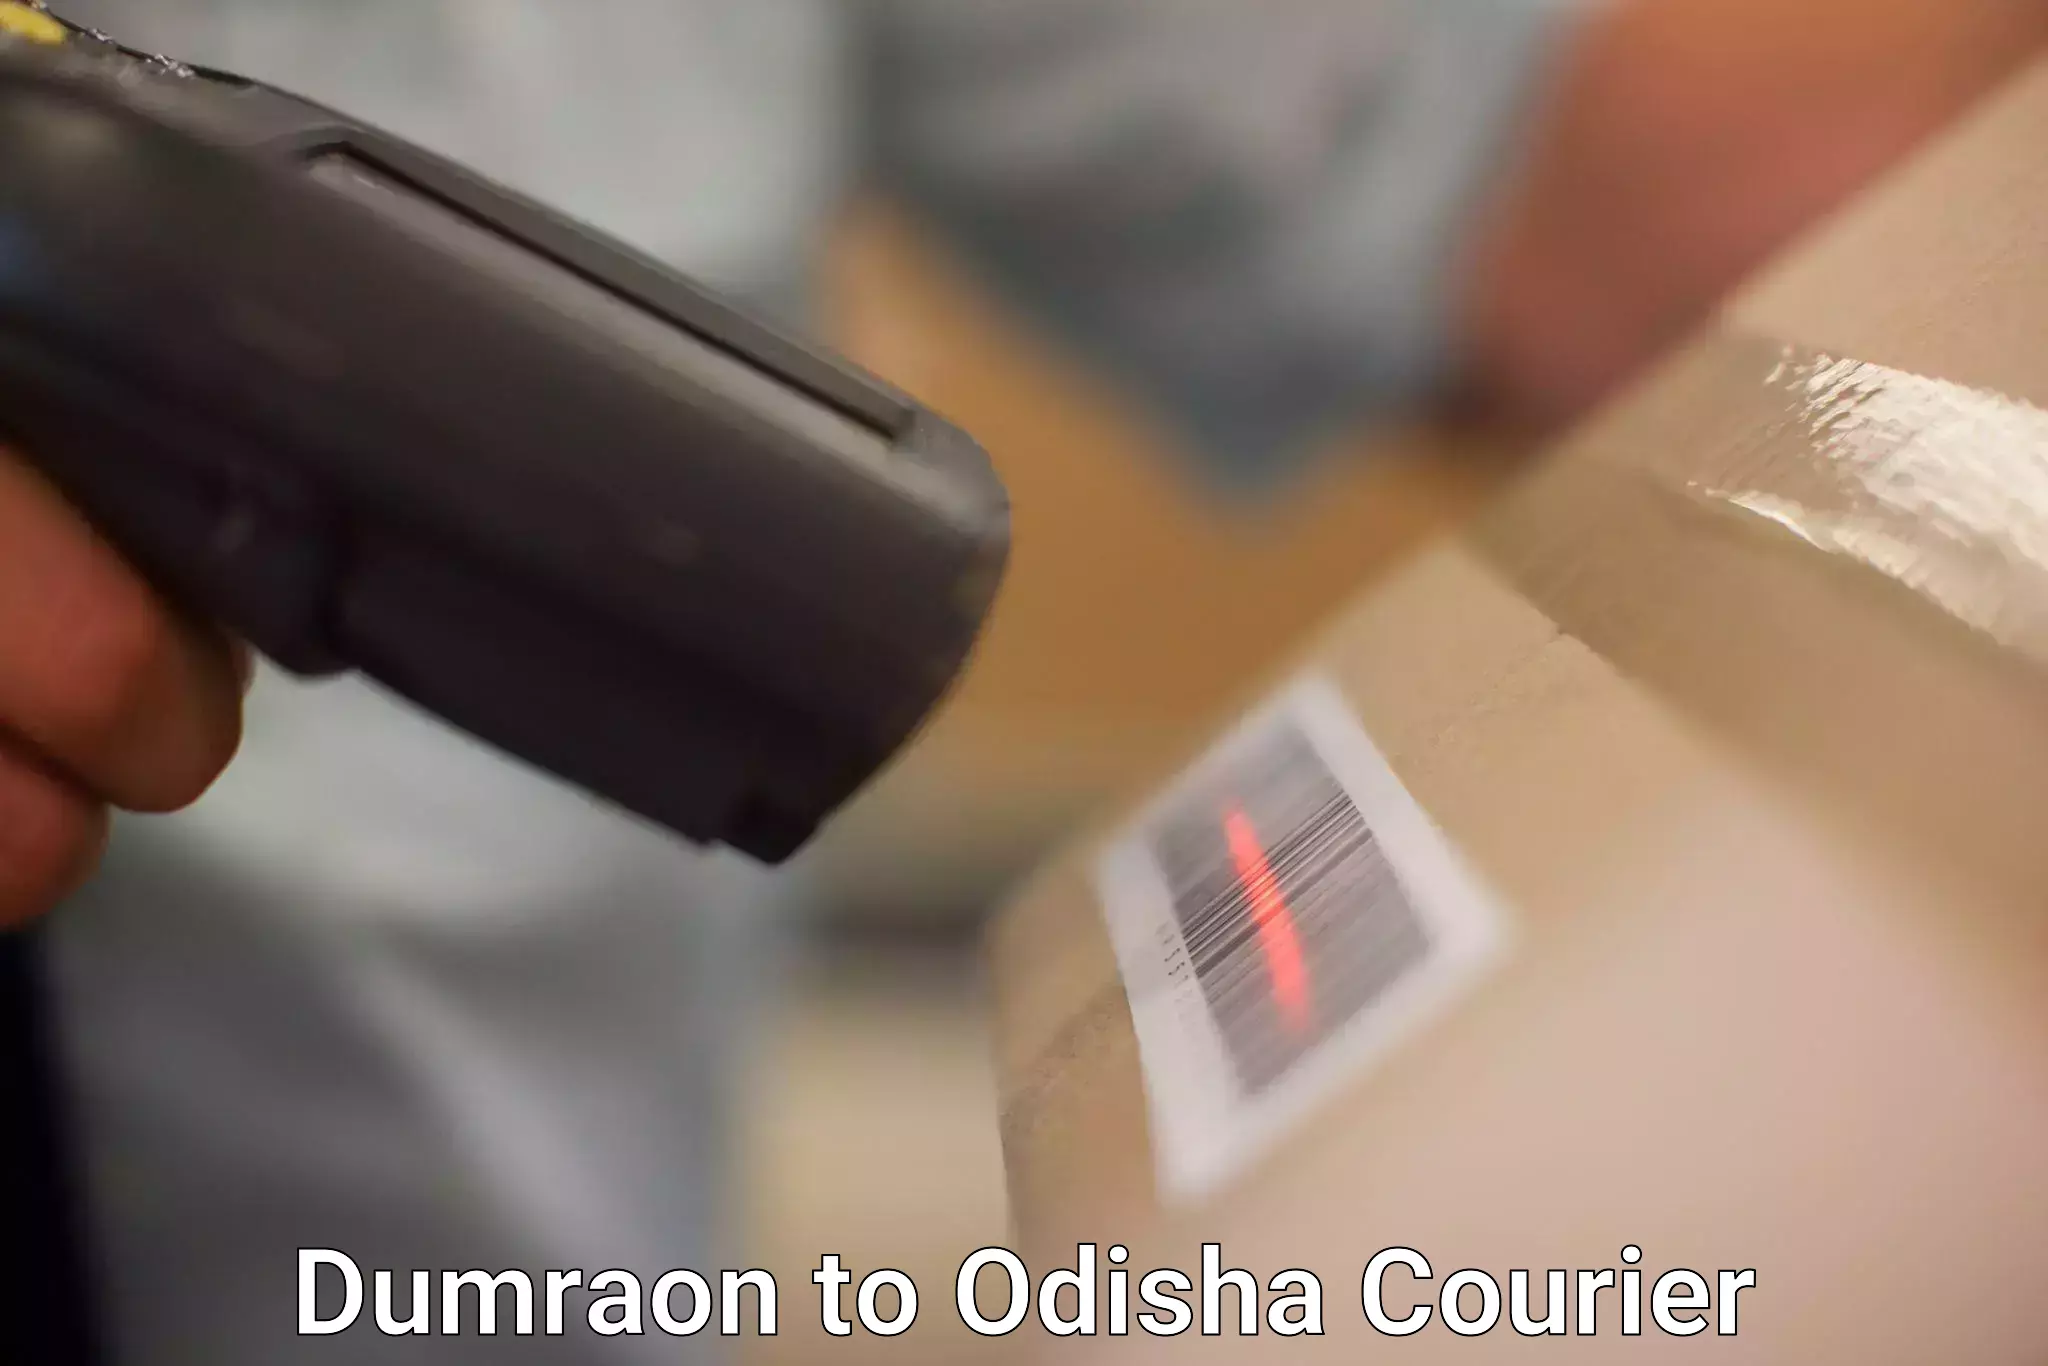 Urban courier service Dumraon to Odisha